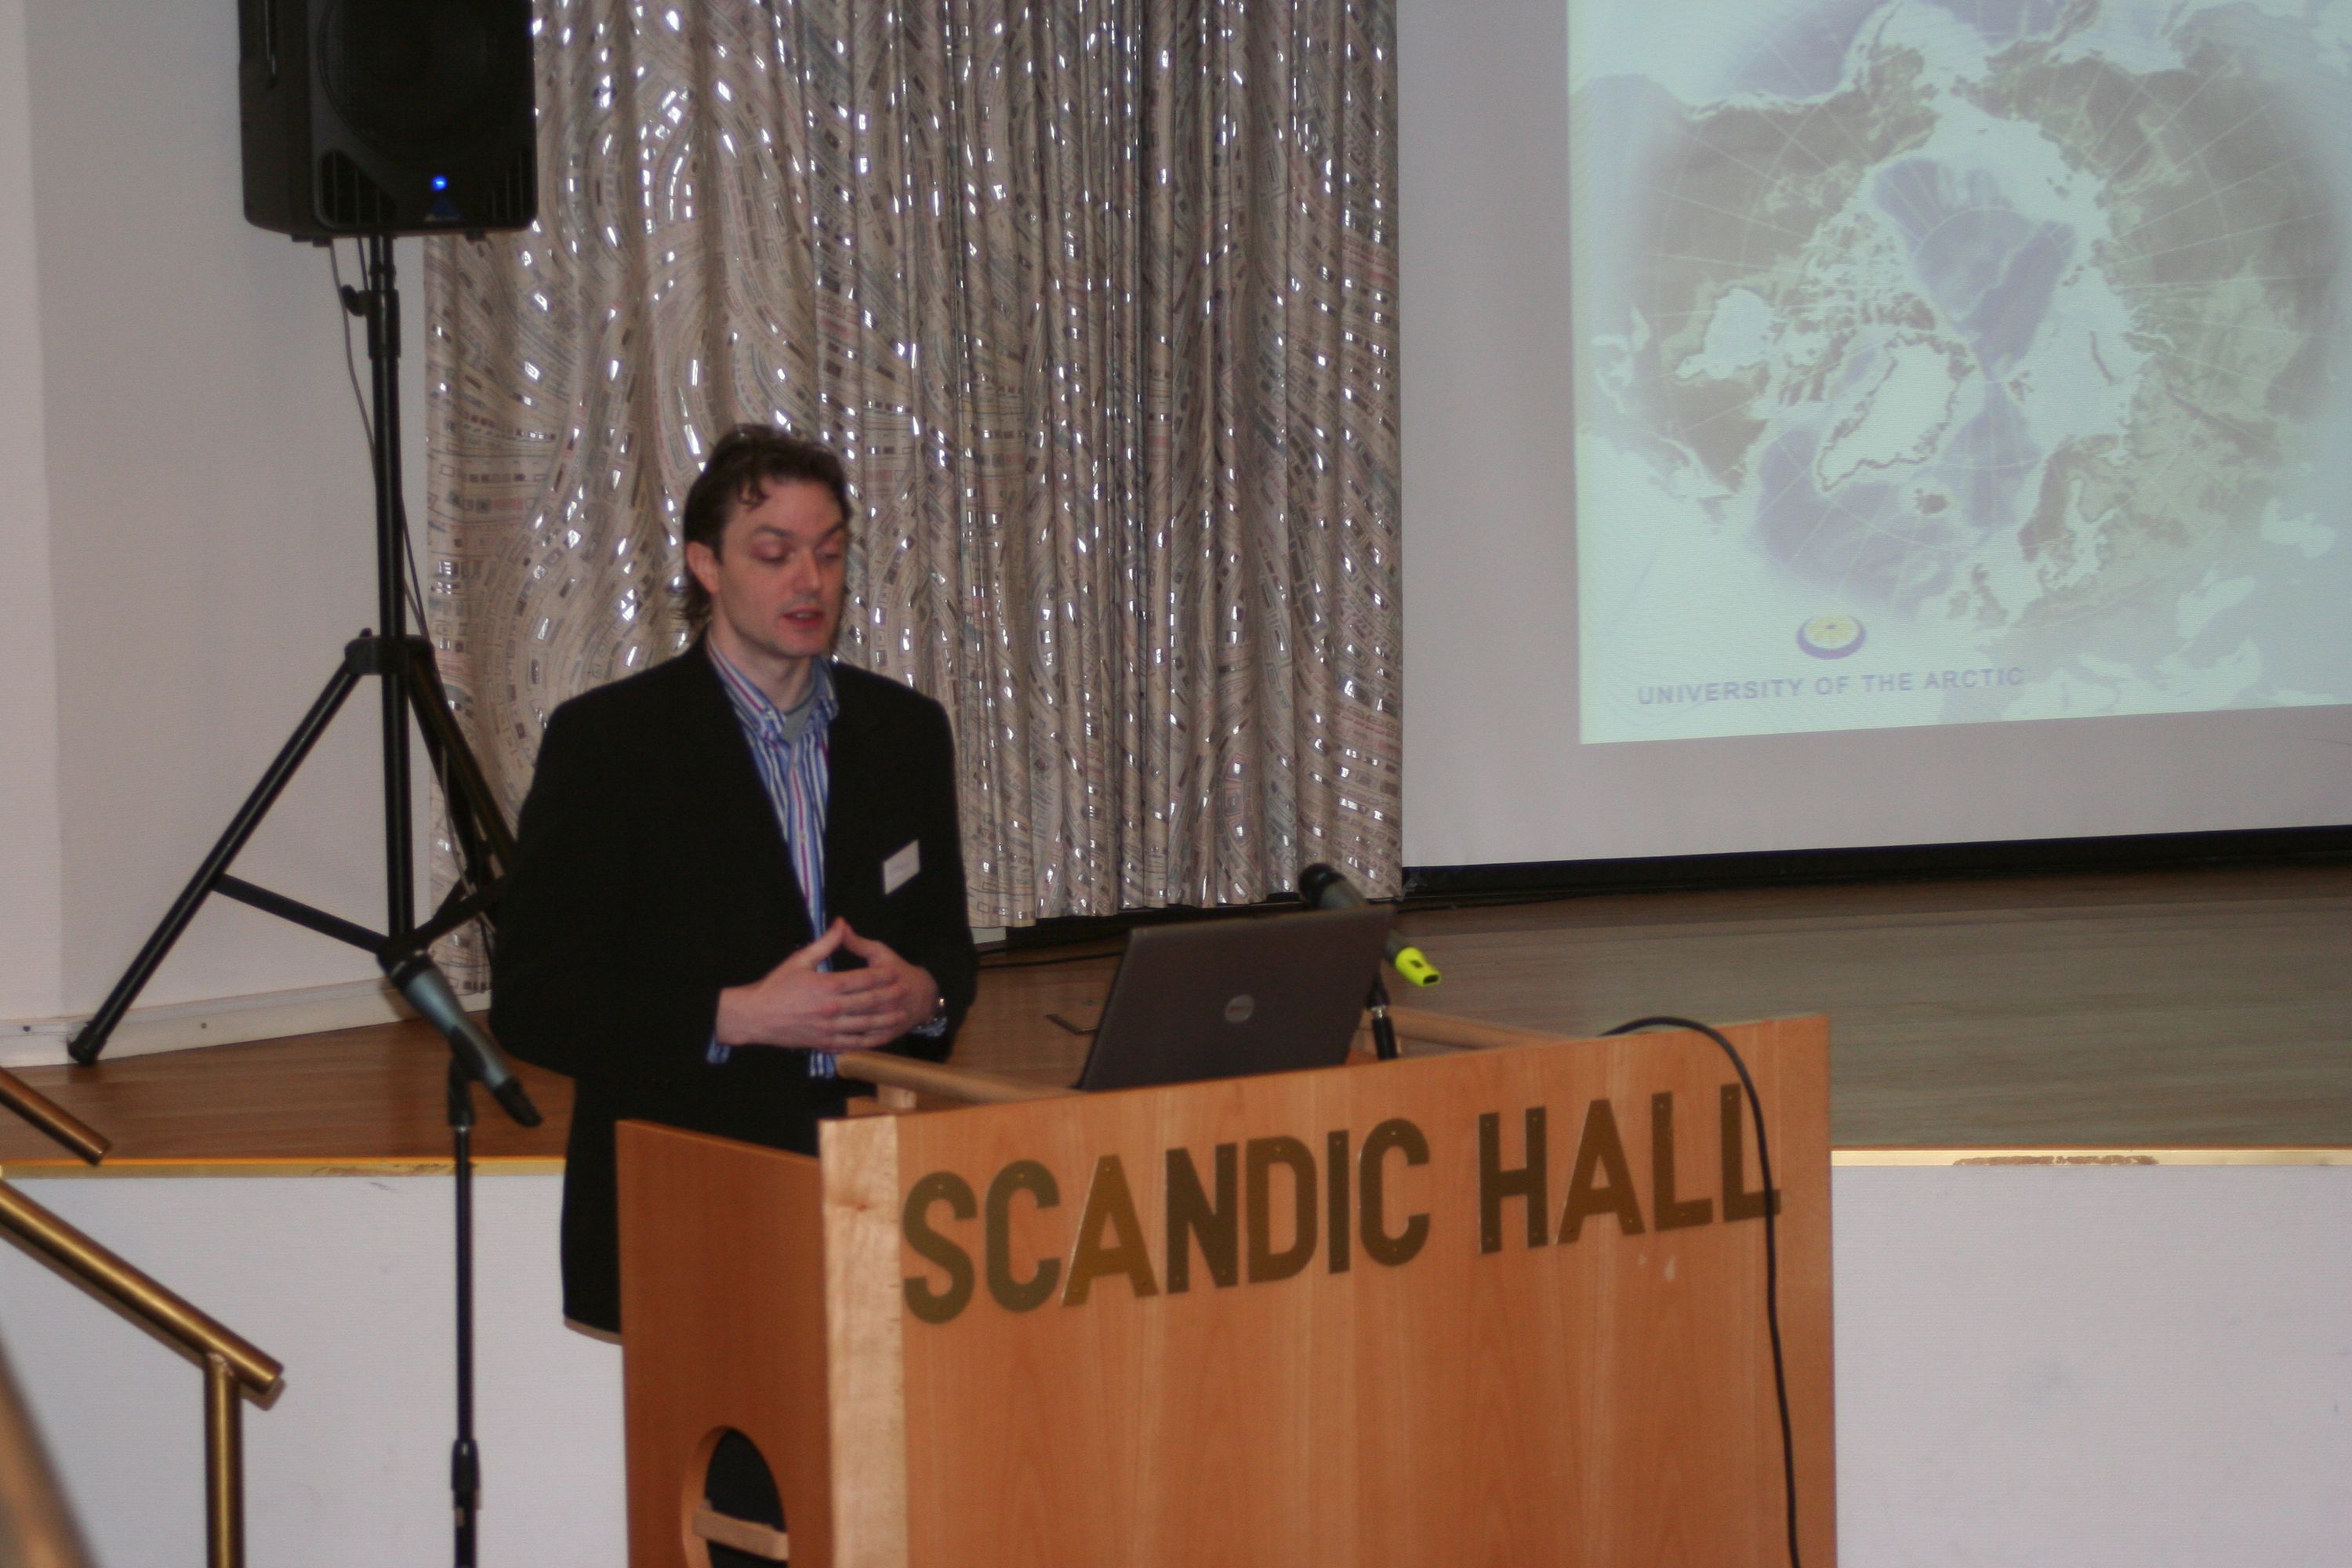 Scott Forrest launches UArctic Atlas website in Tromso